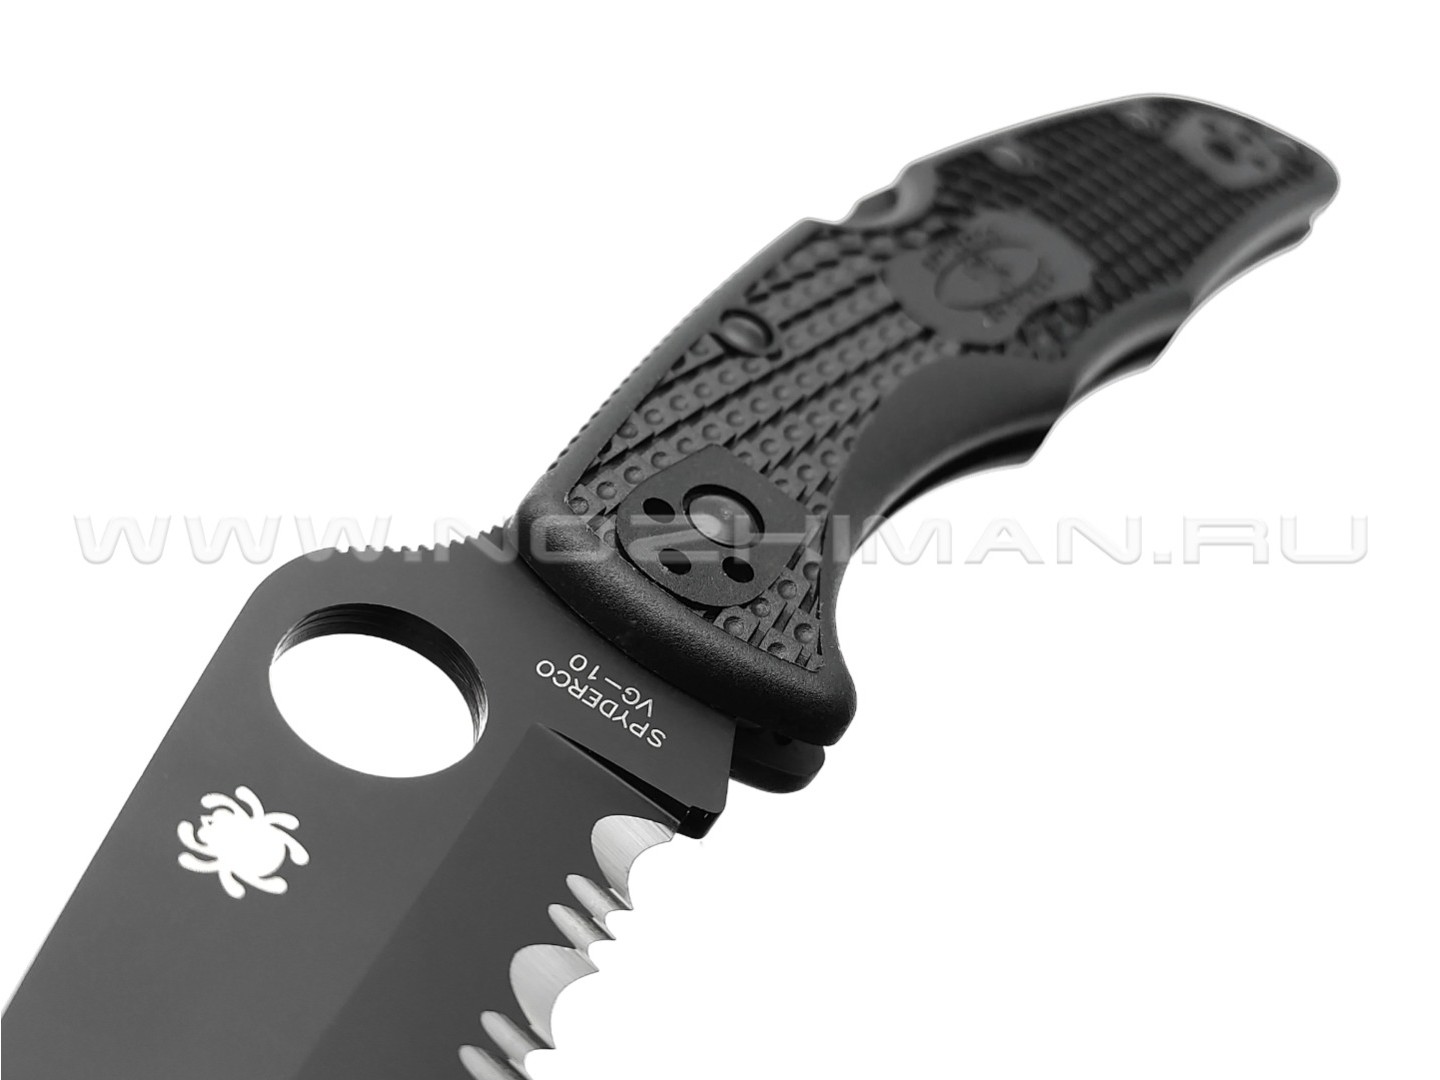 Нож Spyderco Endura 4 Black C10PSBBK сталь VG-10, рукоять FRN black